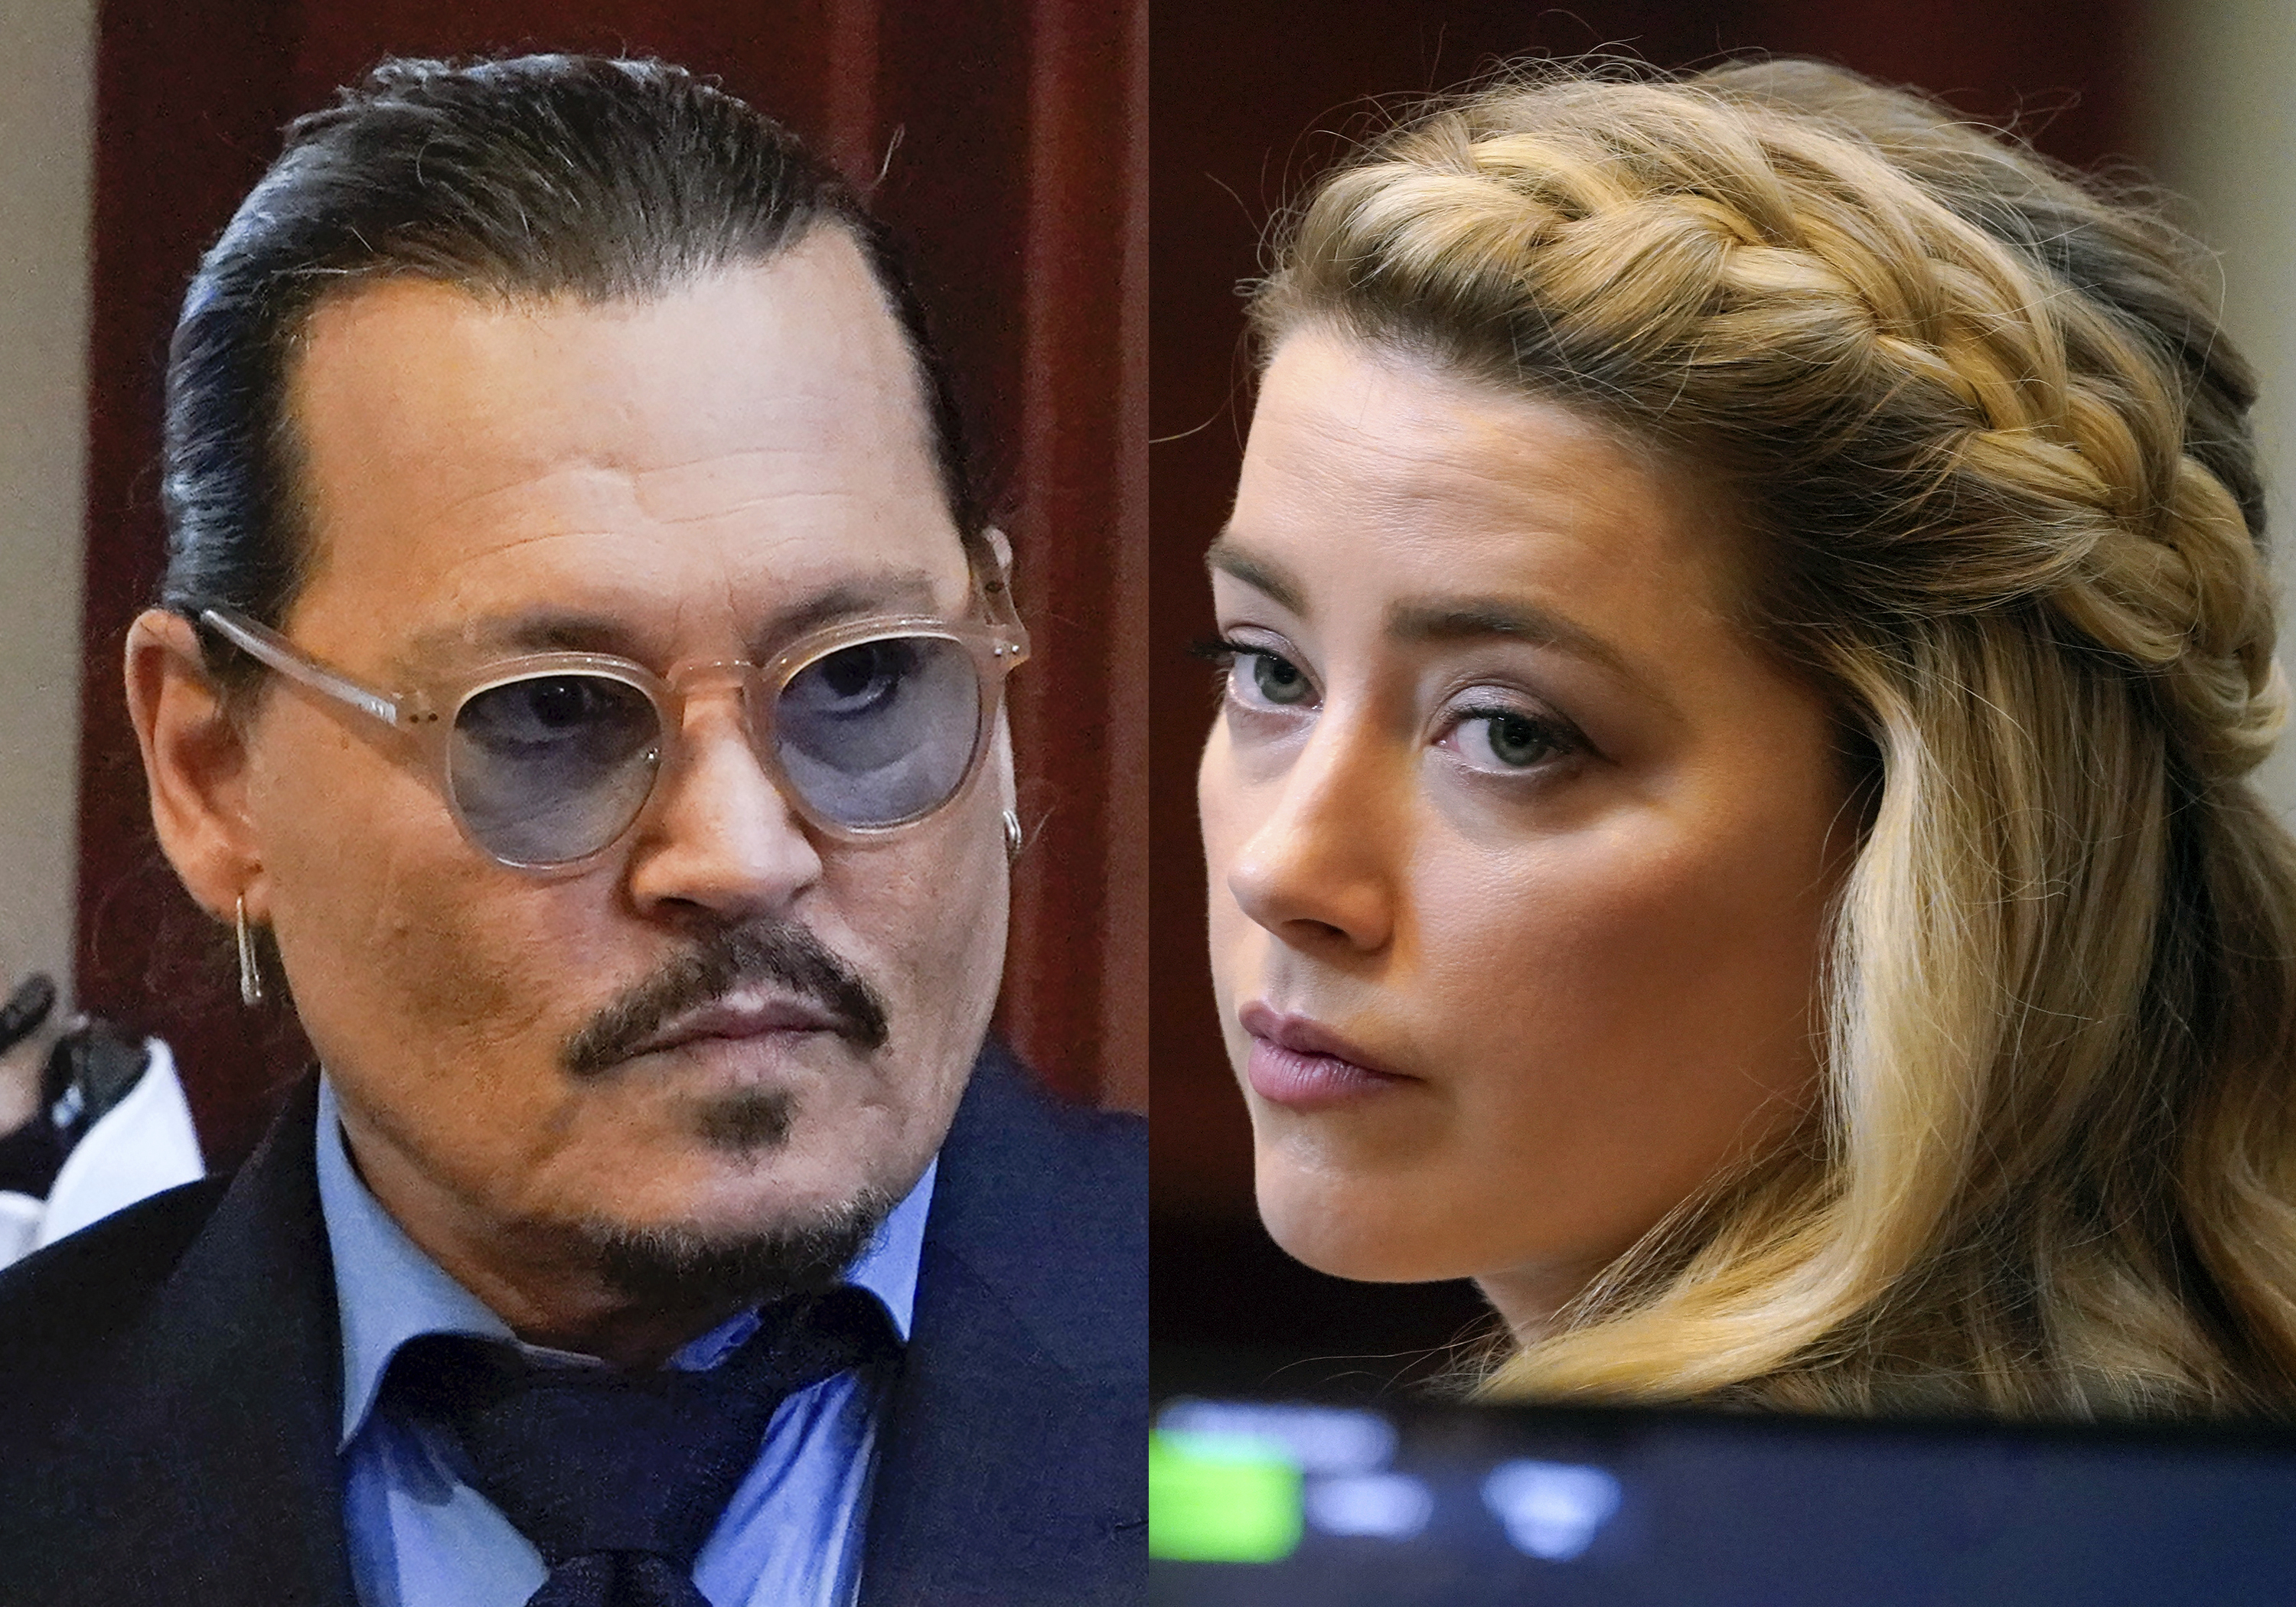 Johnny Depp contra Amber Heard: visto para sentencia | Sociedad | EL PAÍS